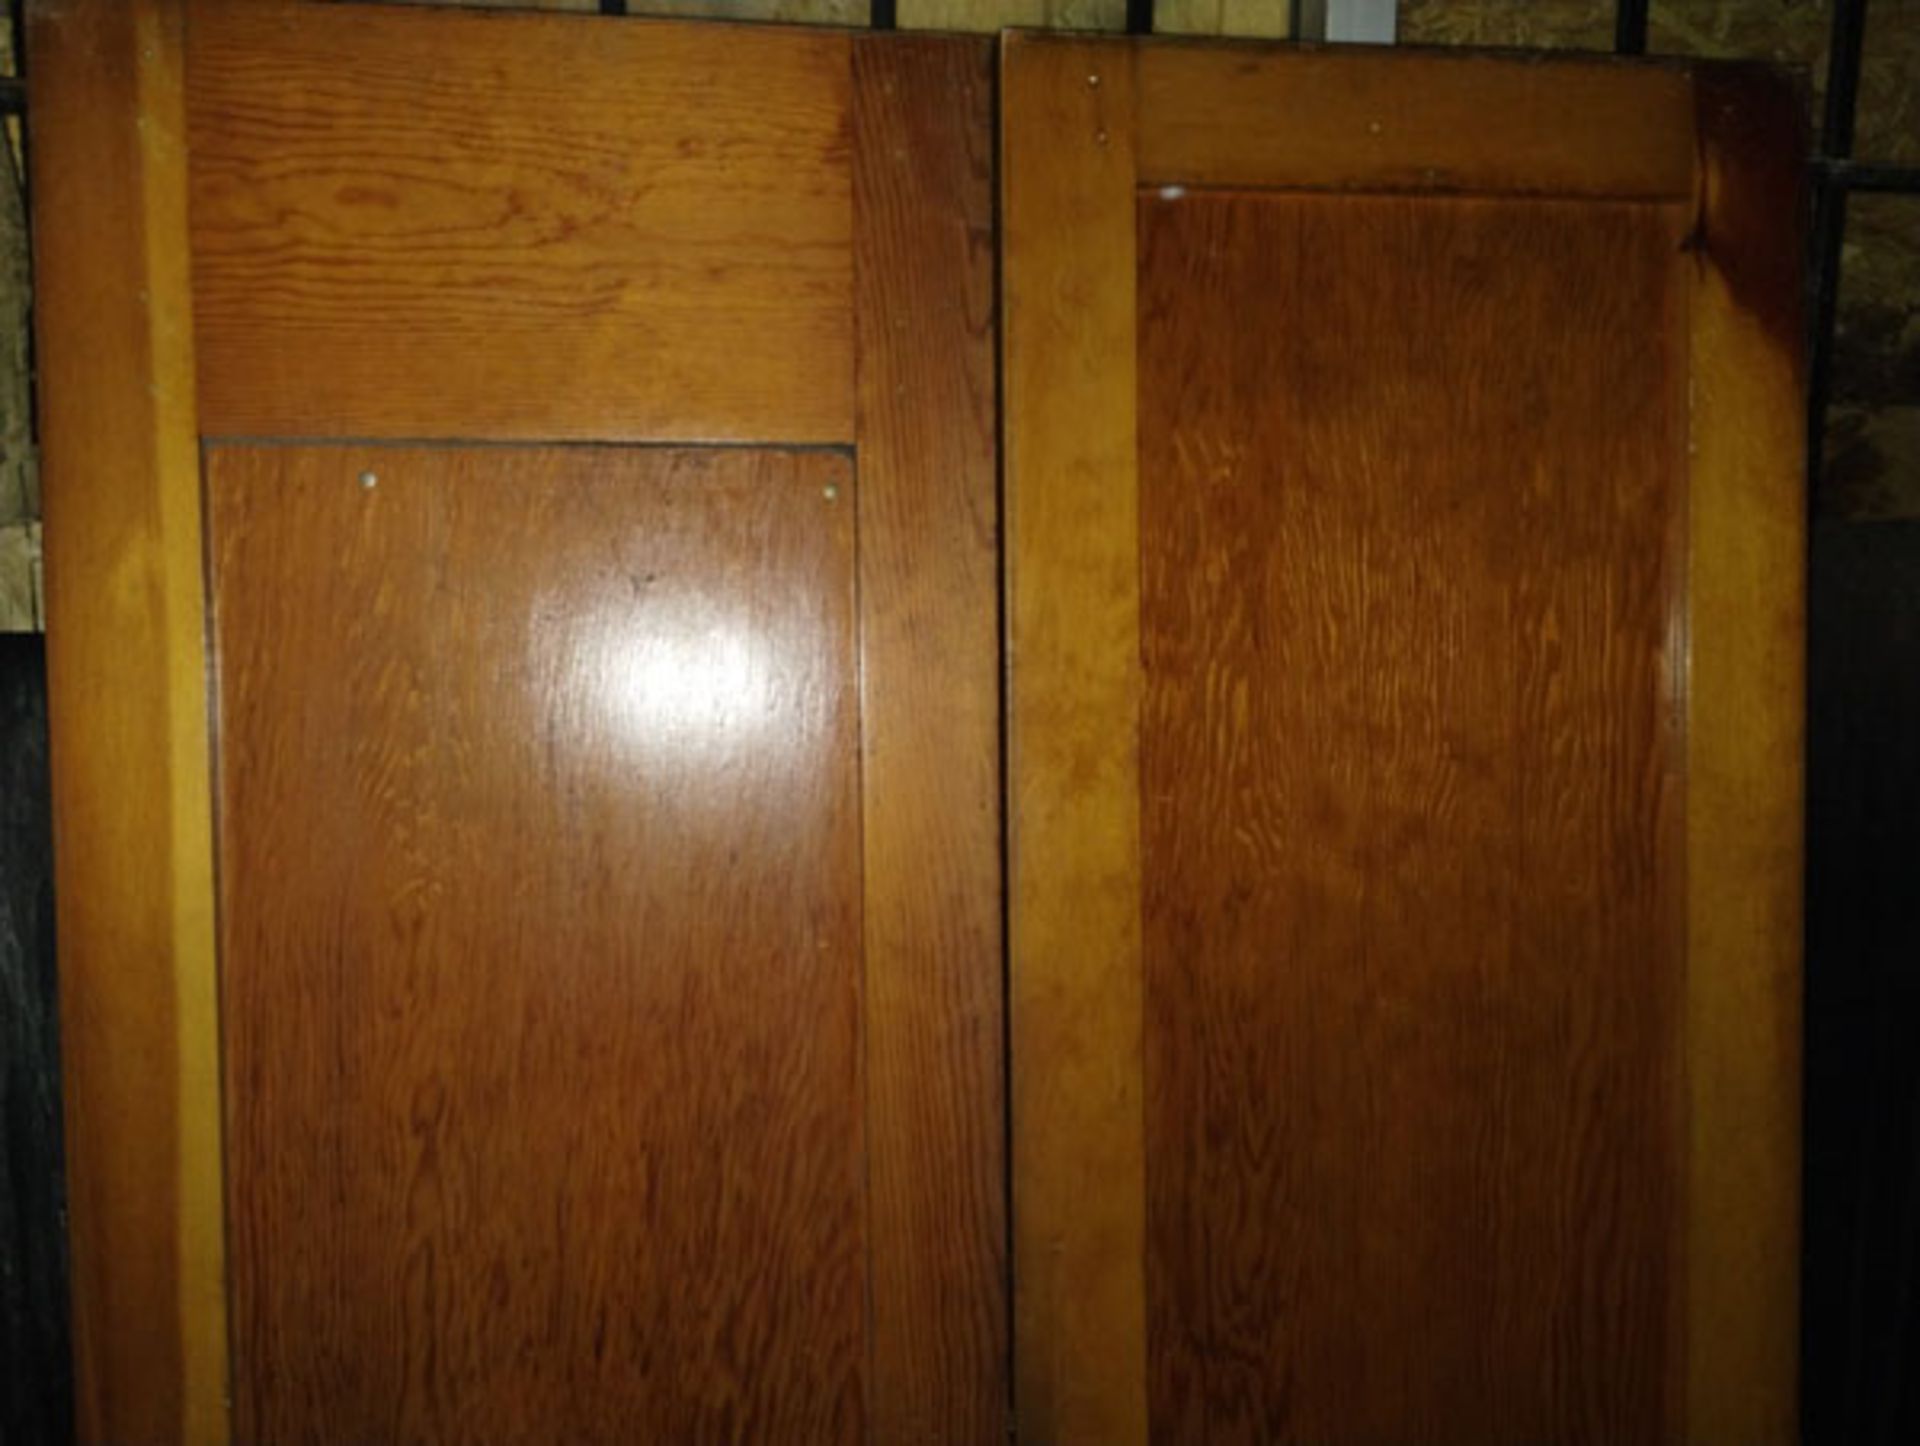 SET OF DOUBLE WOOD DOORS 20" X 72" - Image 5 of 6